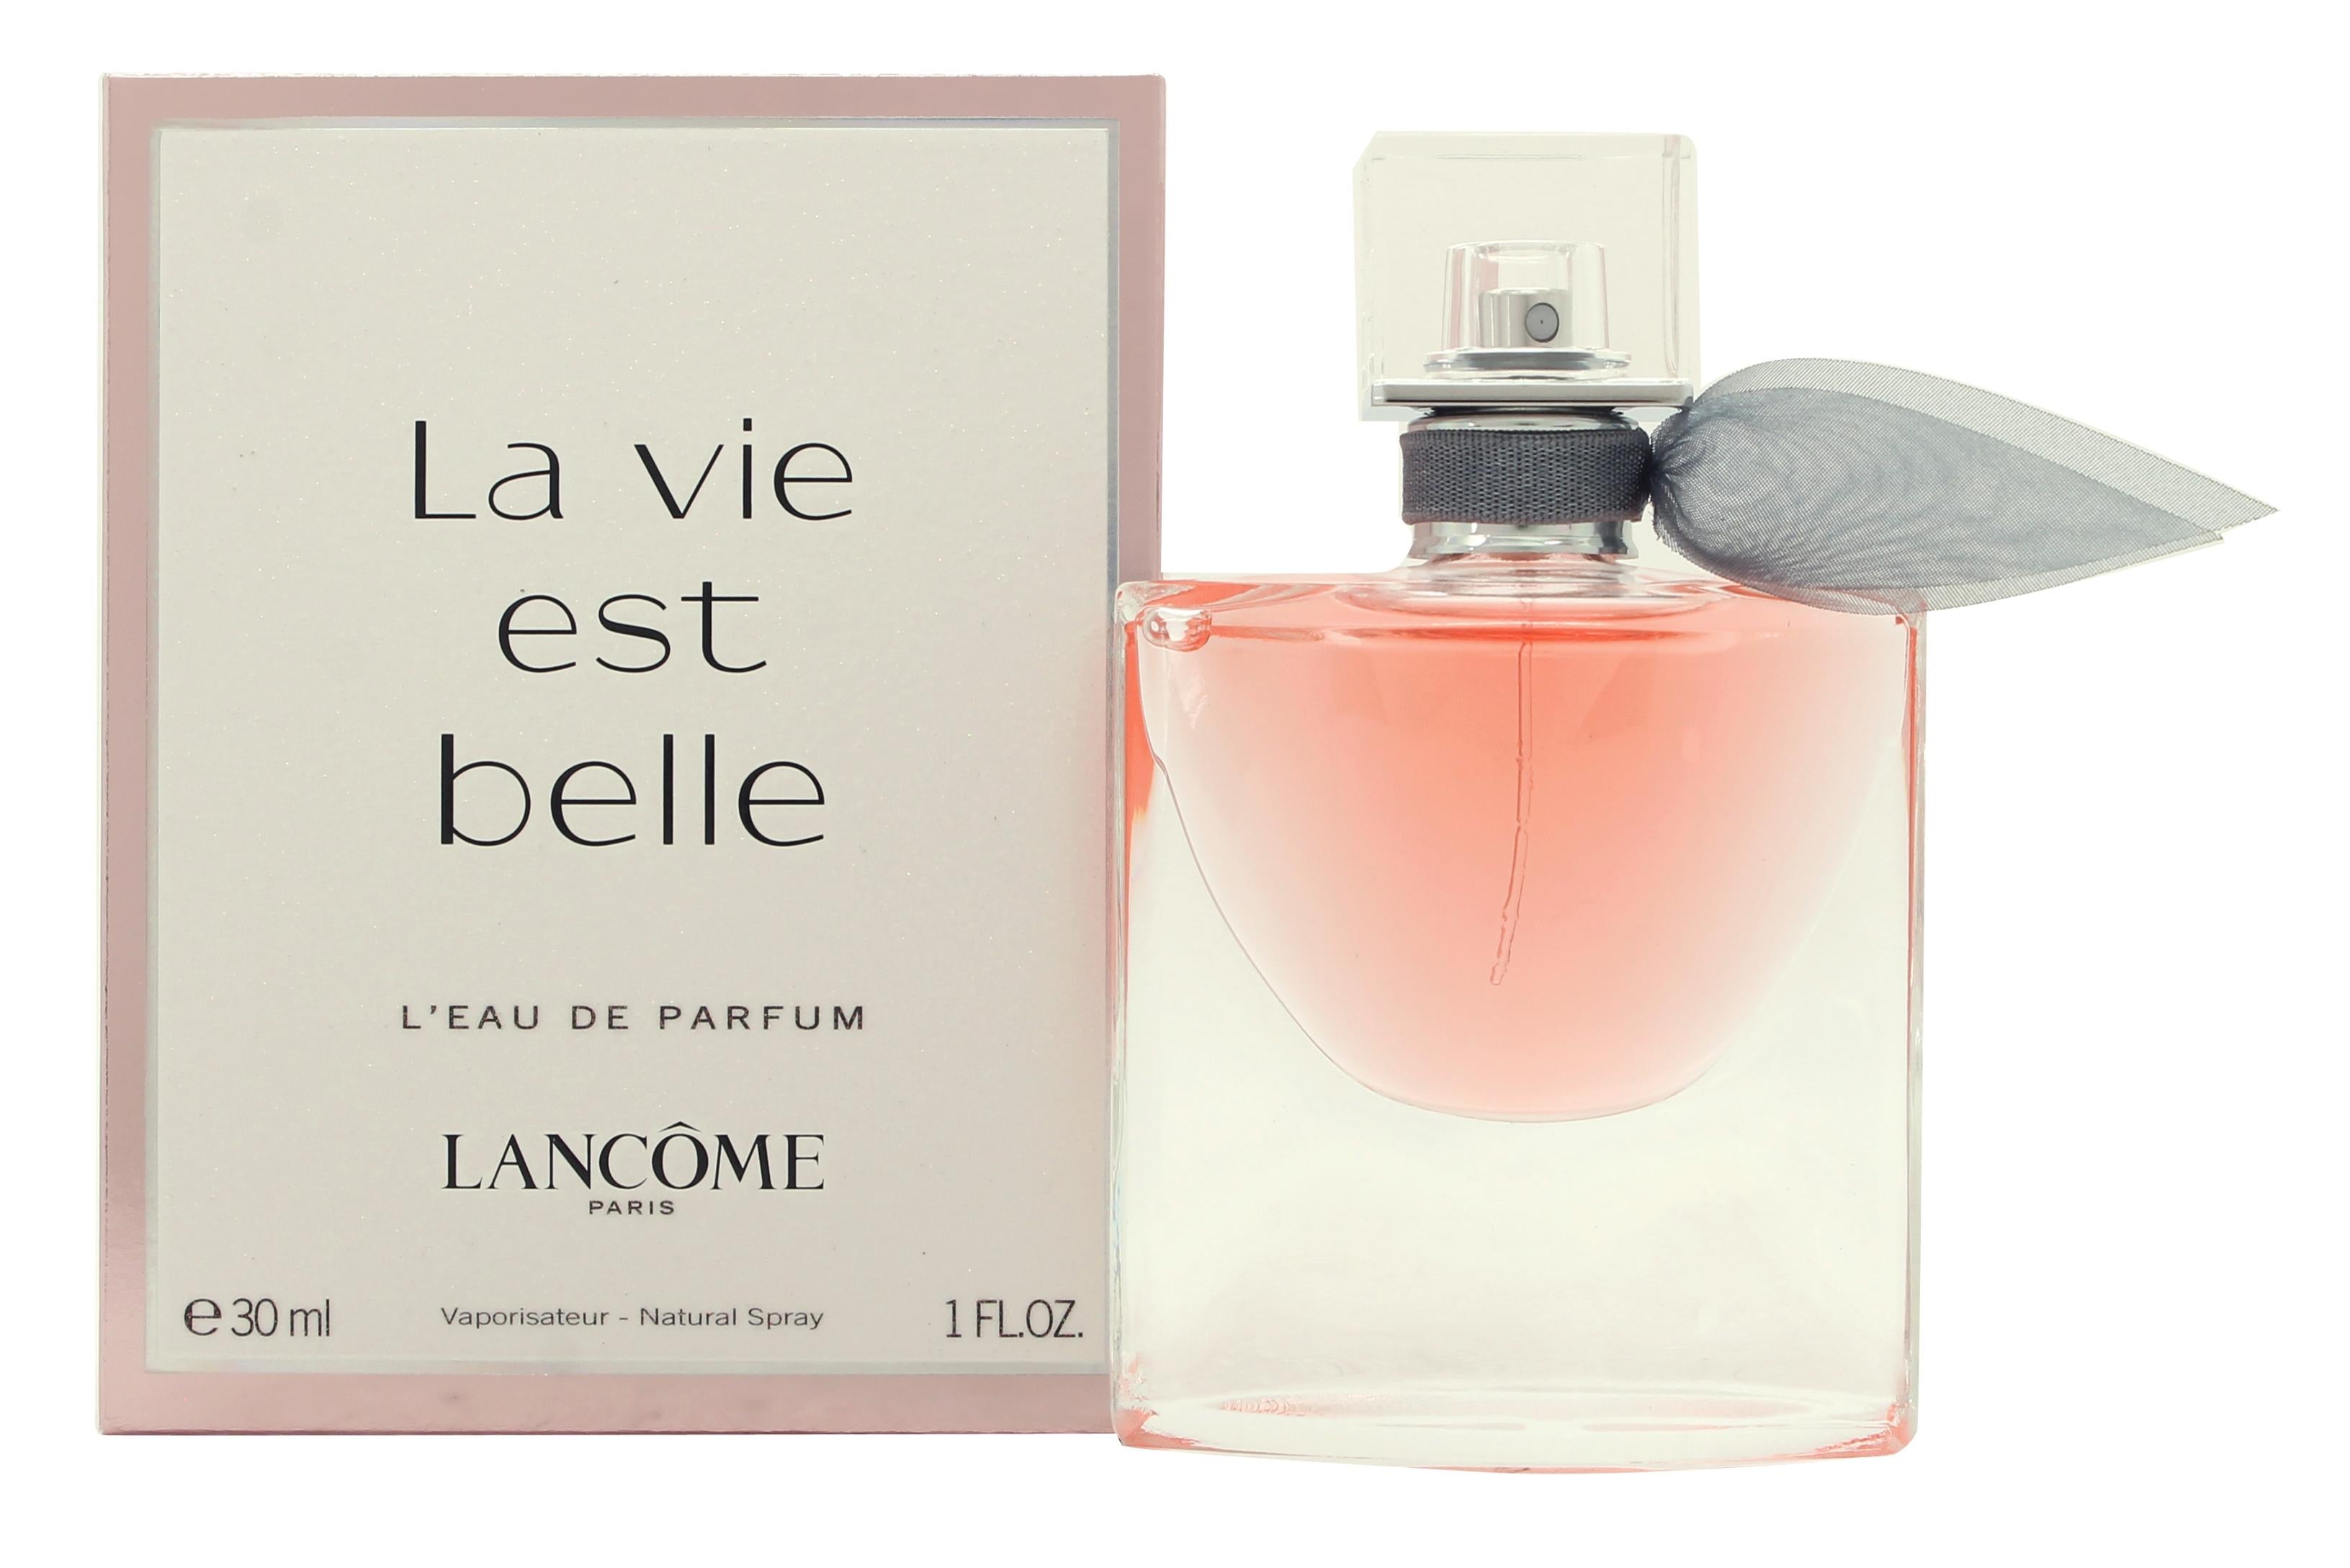 View Lancome La Vie Est Belle Eau de Parfum 30ml Spray information